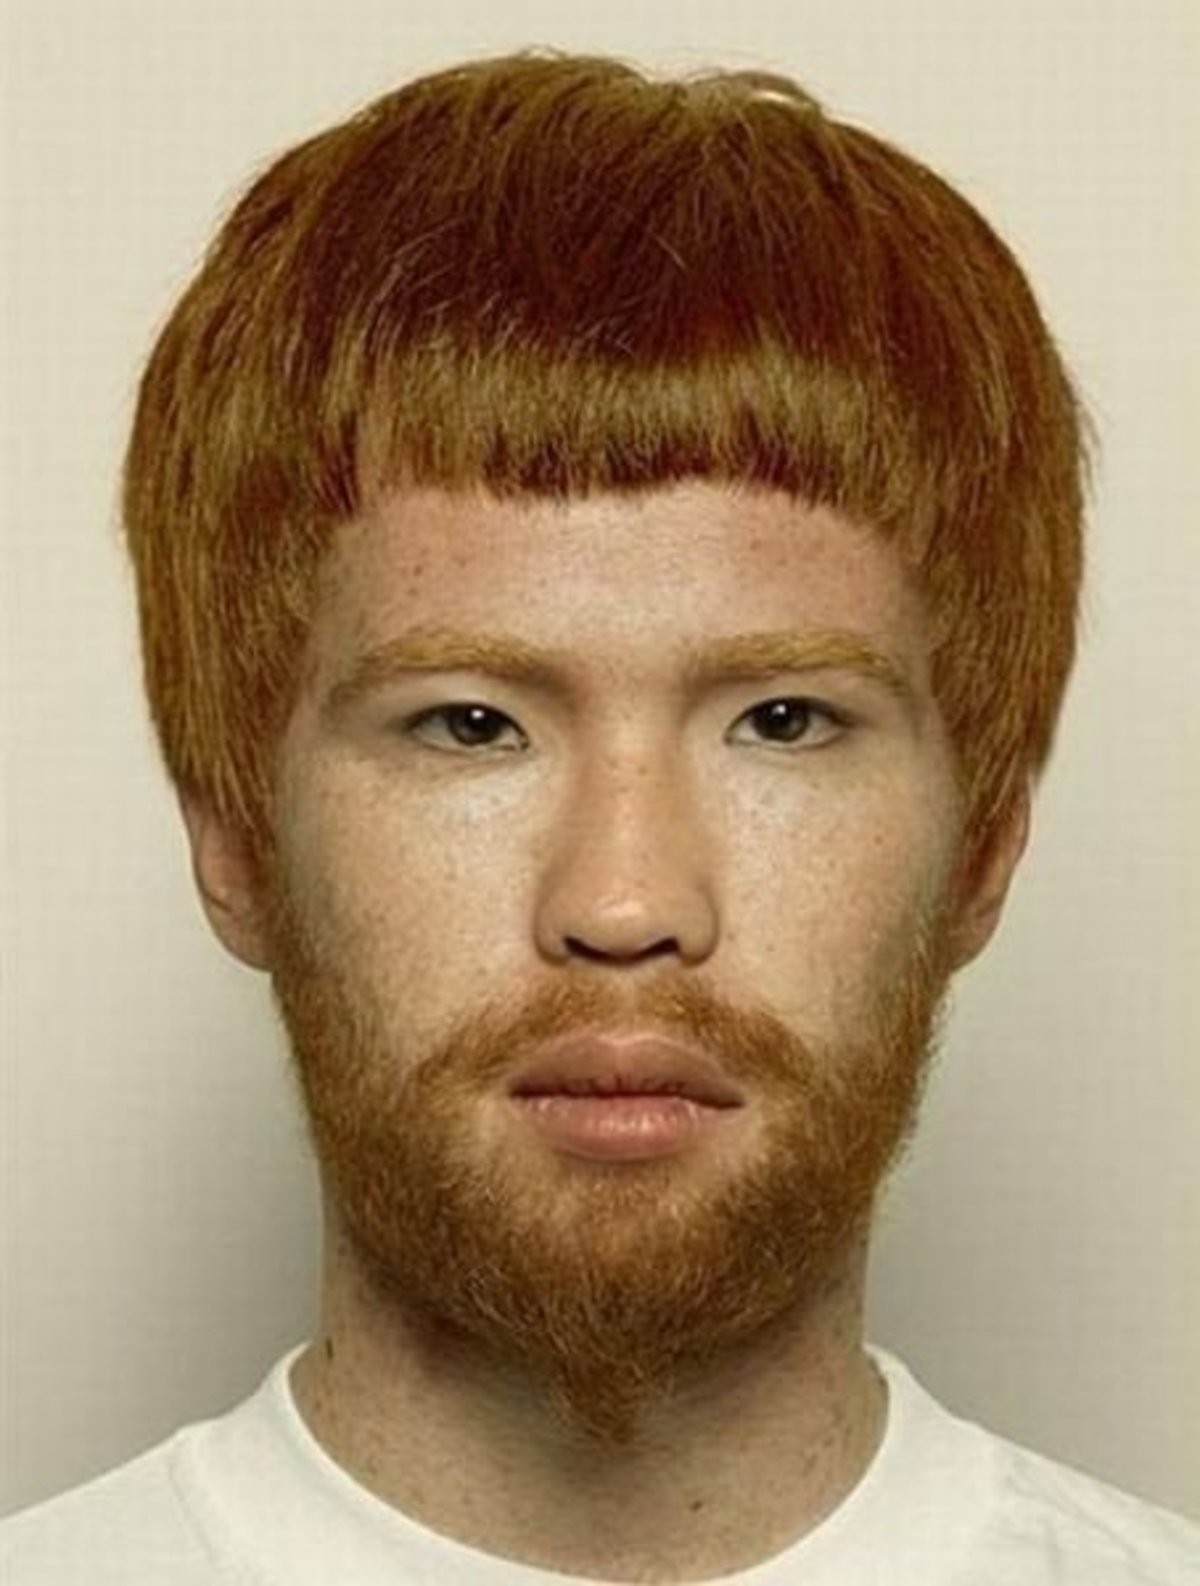 Ginger Asian.